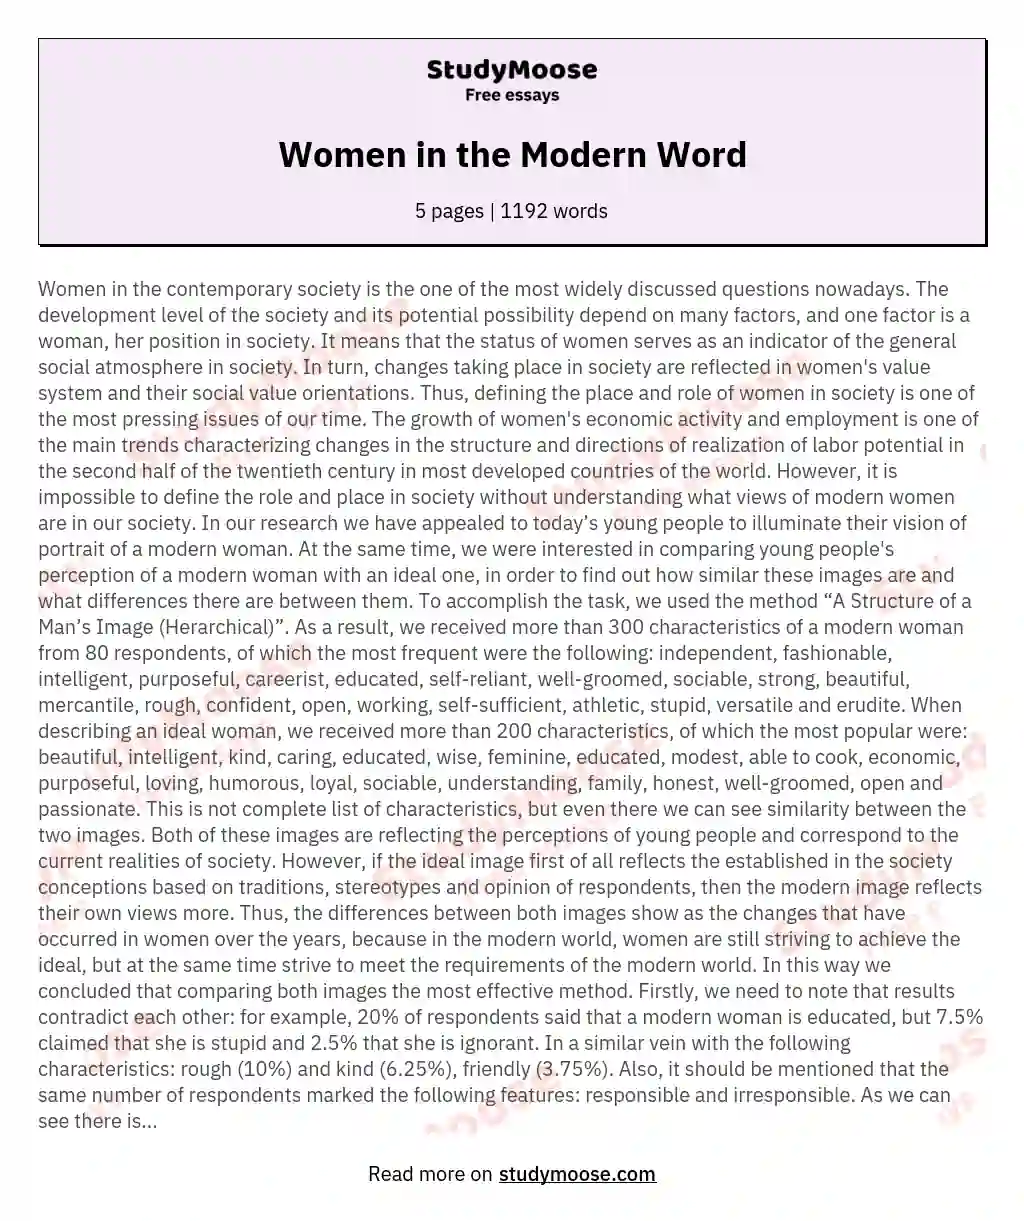 Women in the Modern Word essay